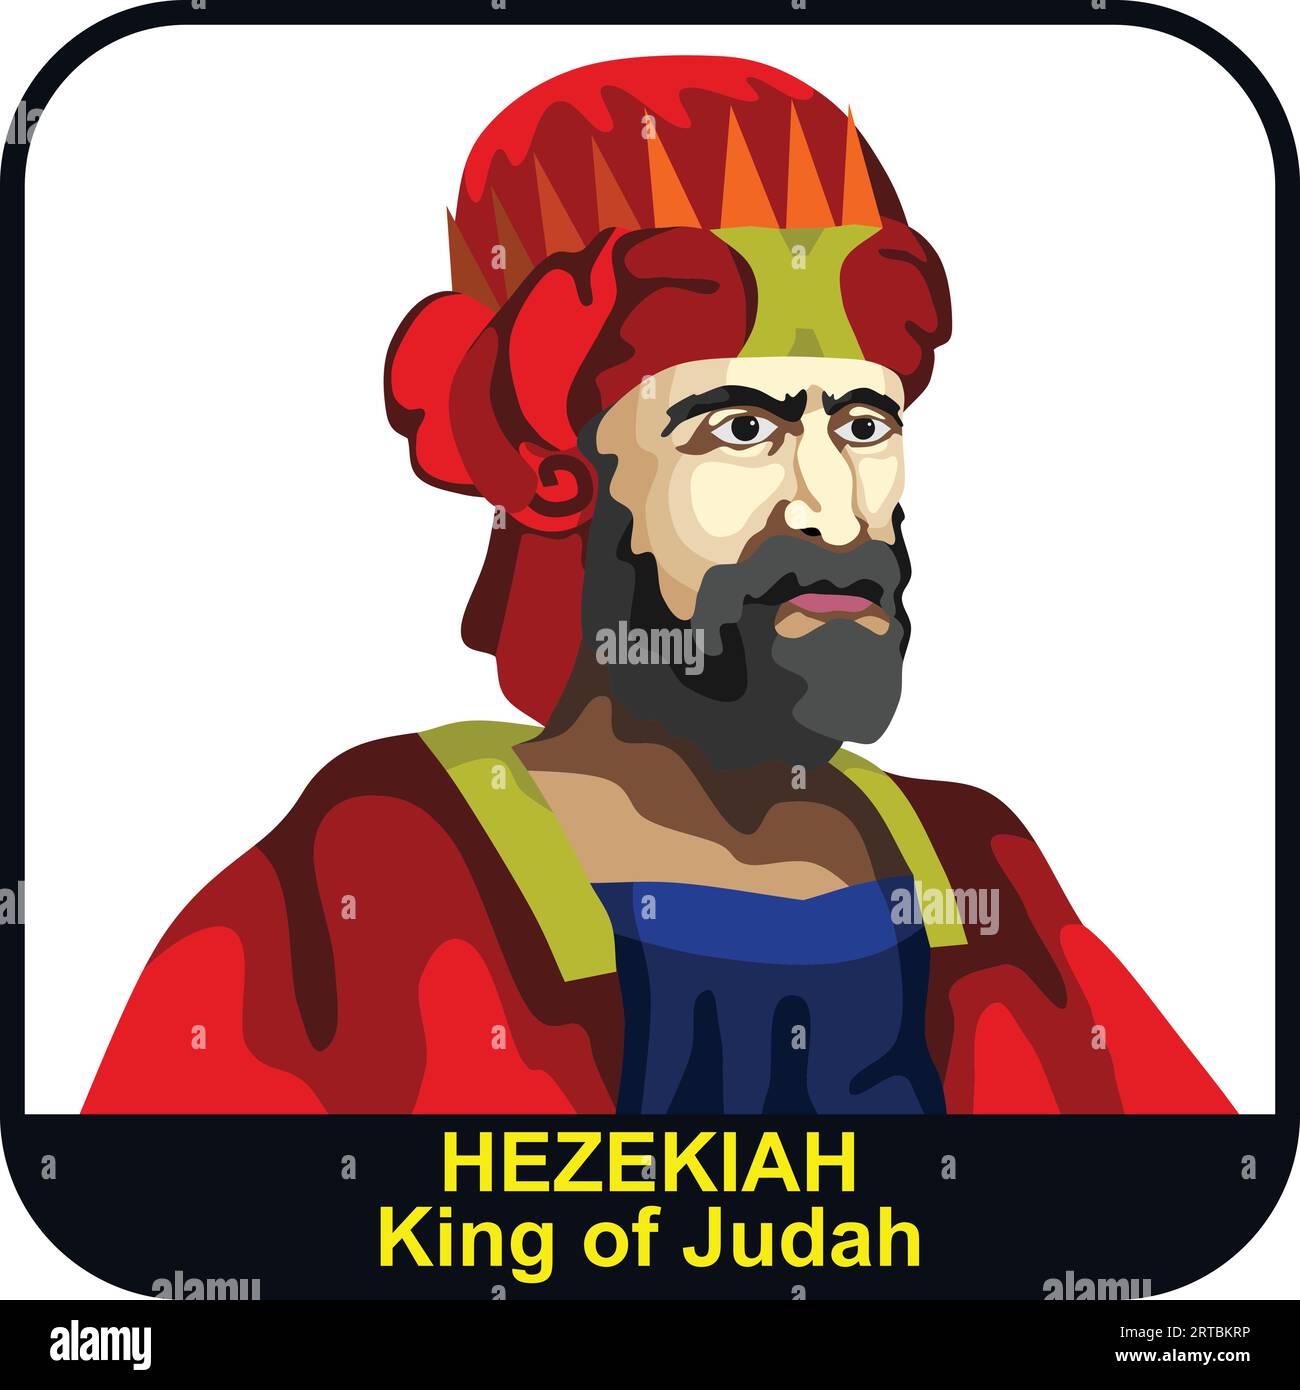 Hezekiah 13th Judah King Stock Vector